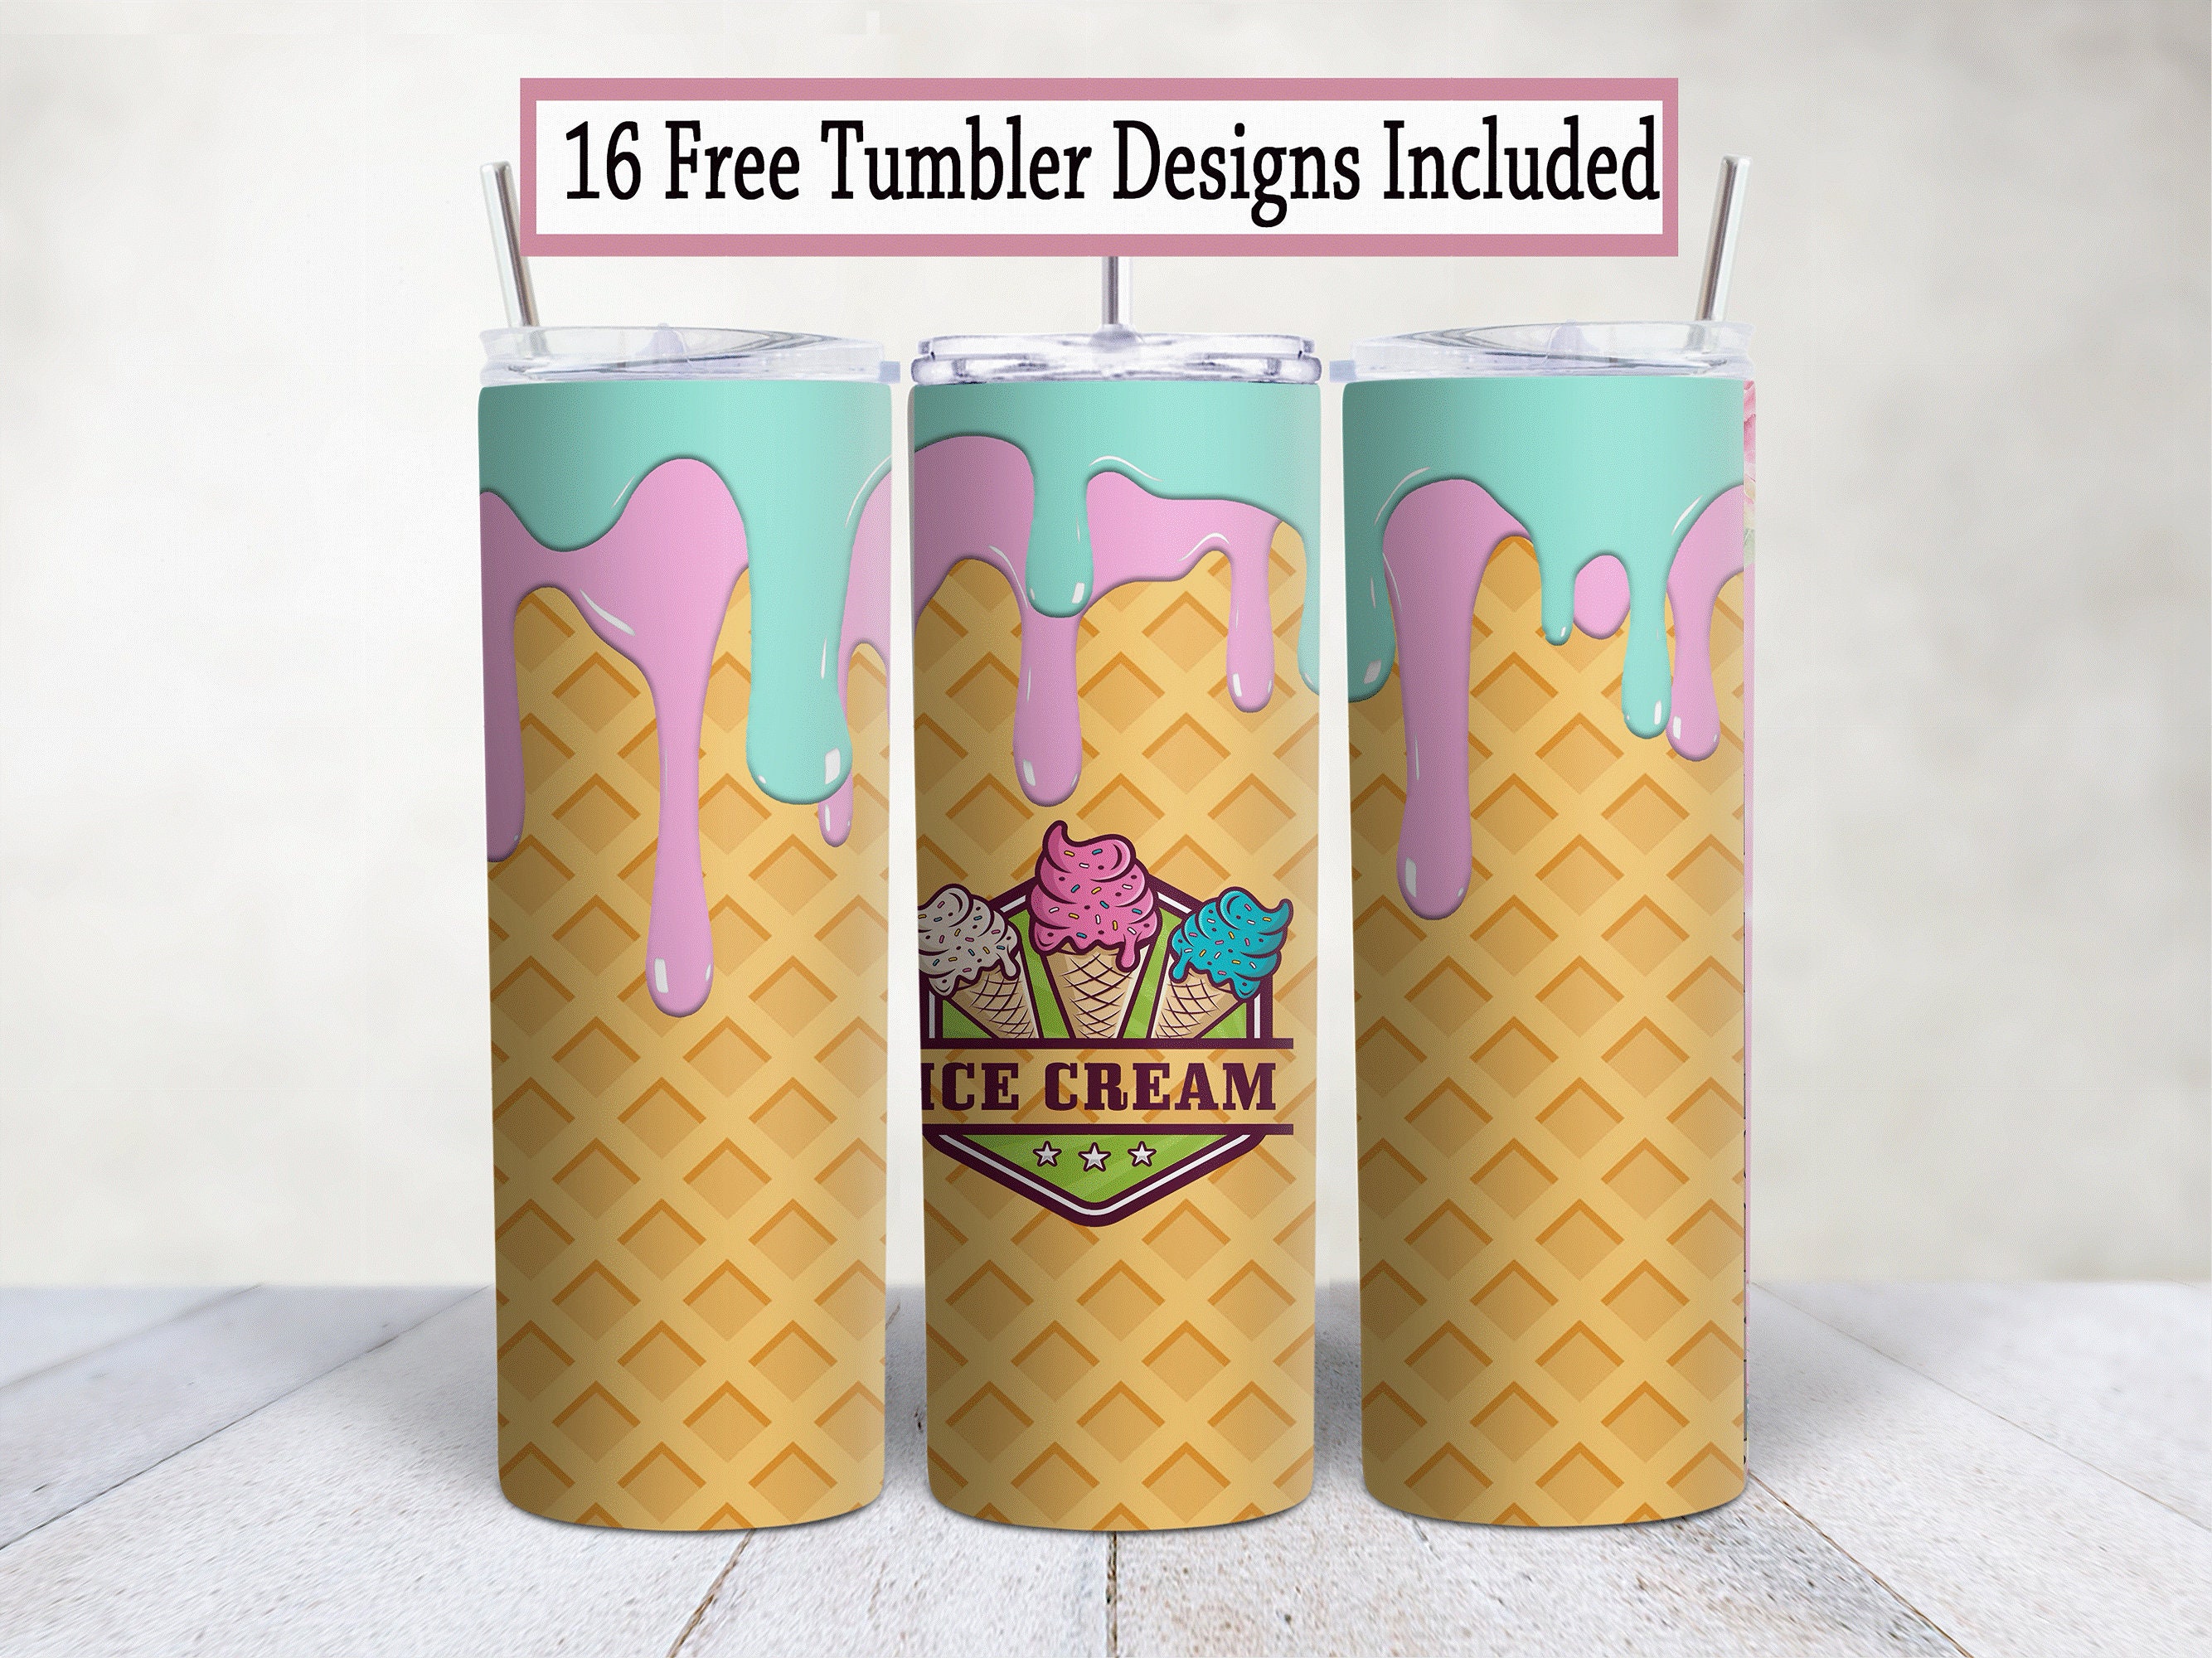 Ice Cream Blackberry Tumbler 1 Graphic by Tumbler Wraps · Creative